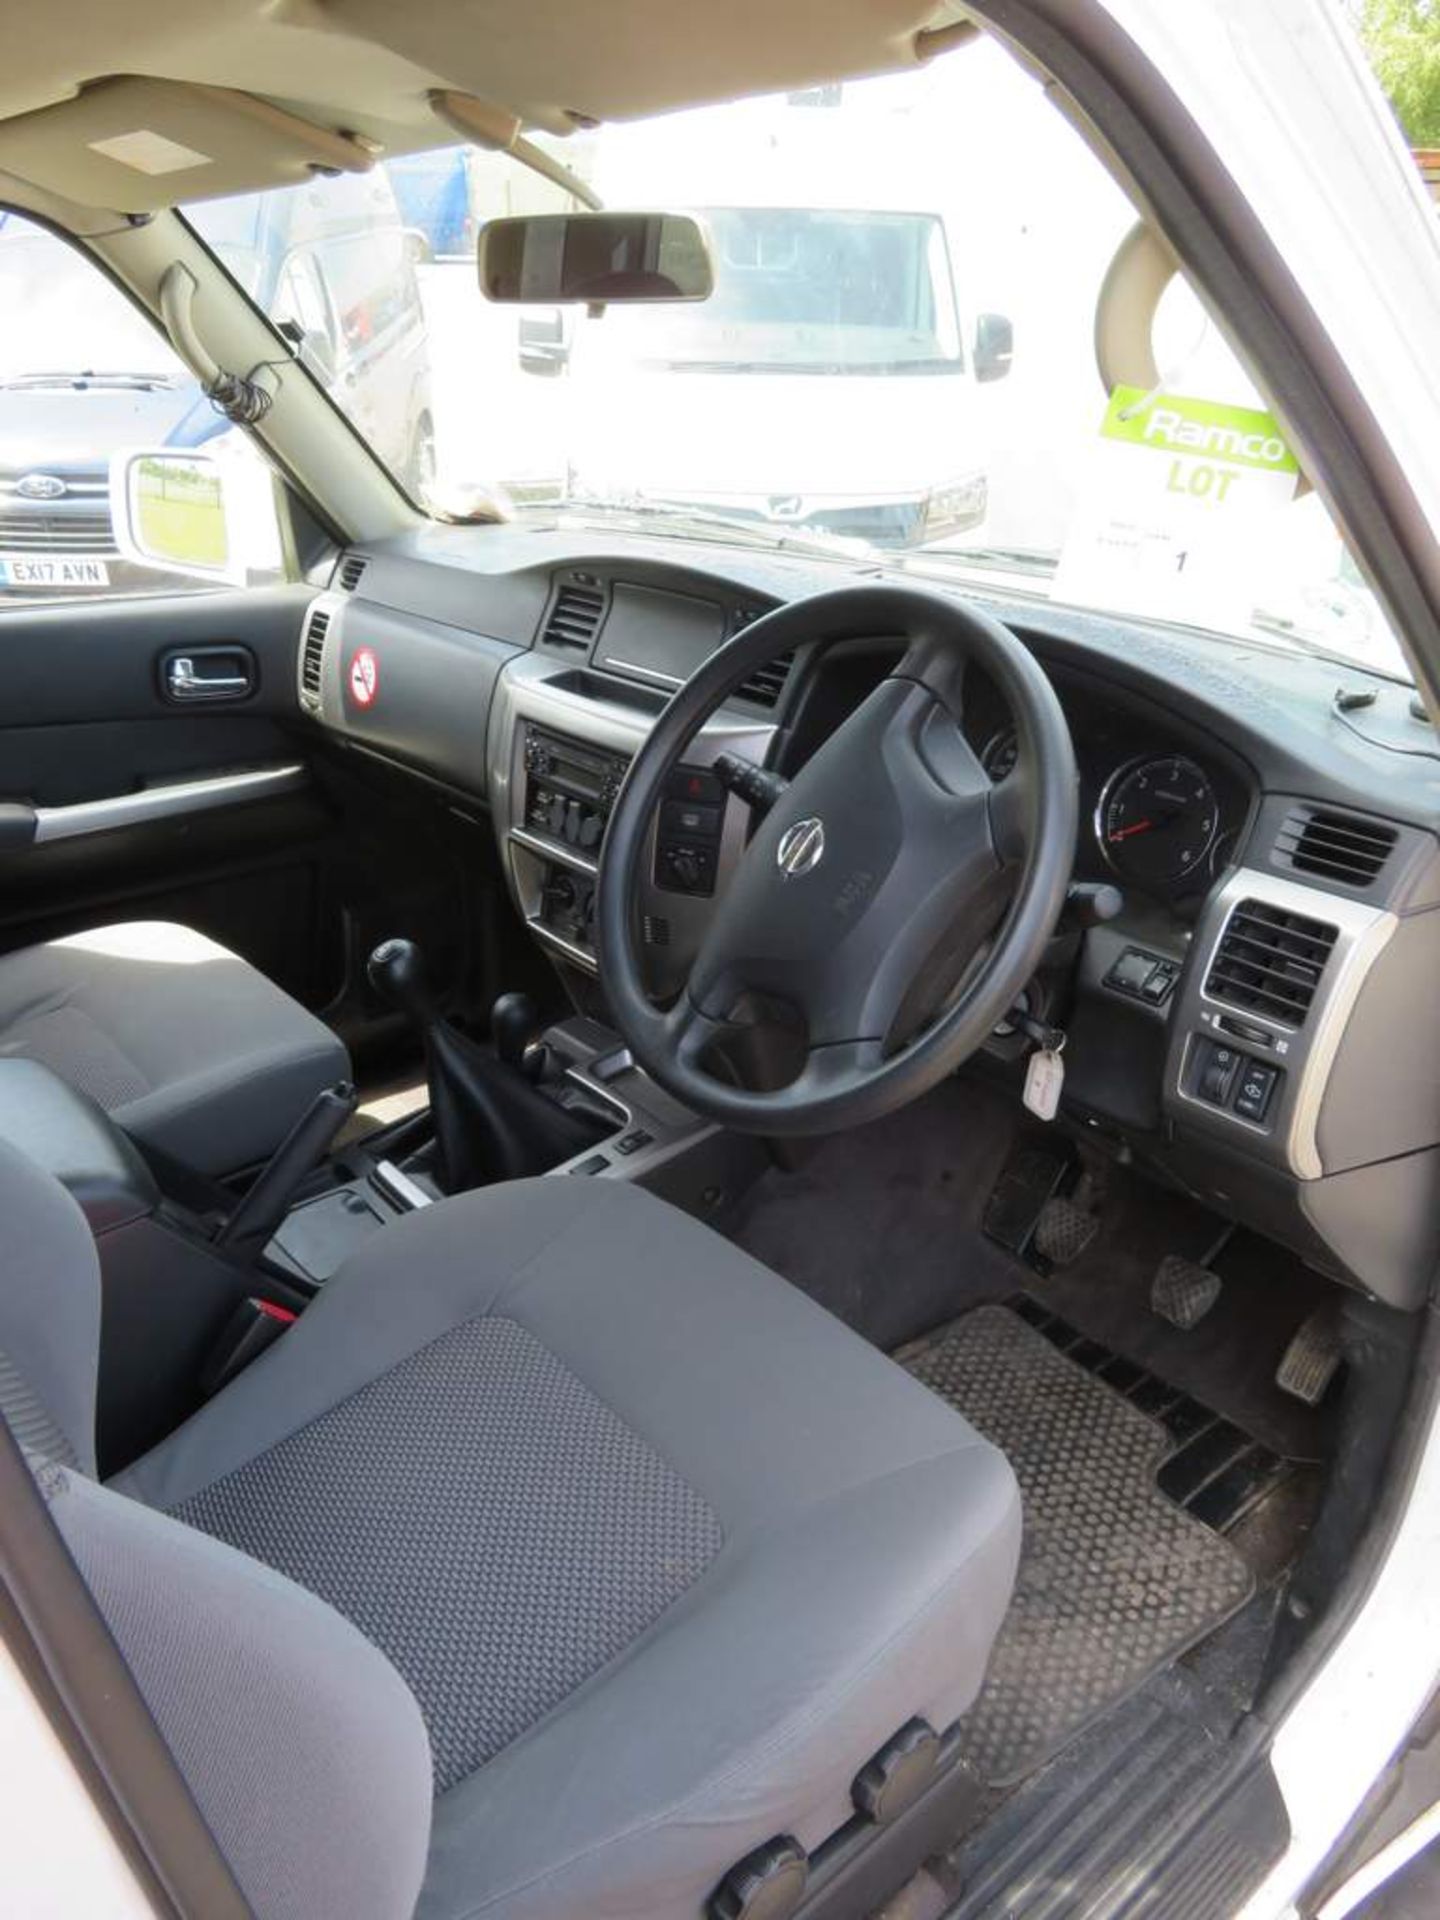 2009 Nissan Patrol Trek DI 4x4 - Image 9 of 30